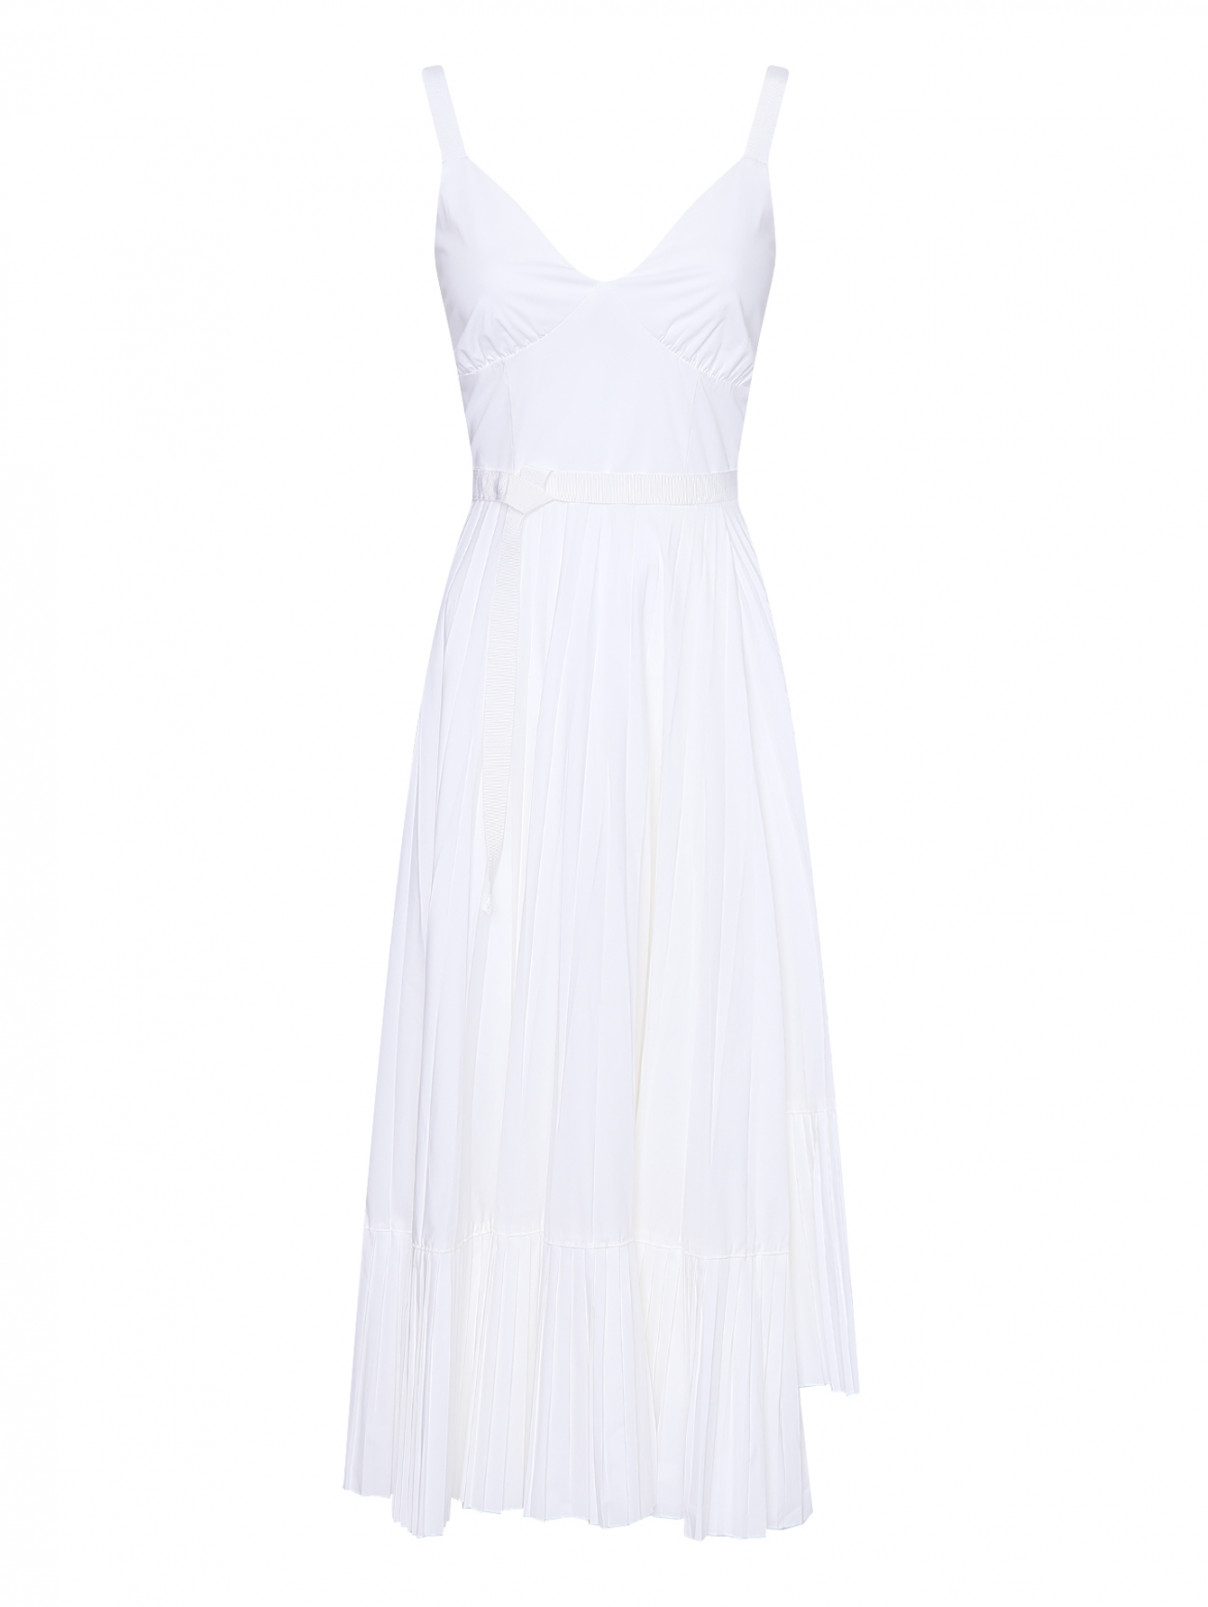 Платье из хлопка с юбкой плиссе Beatrice .b  –  Общий вид  – Цвет:  Белый